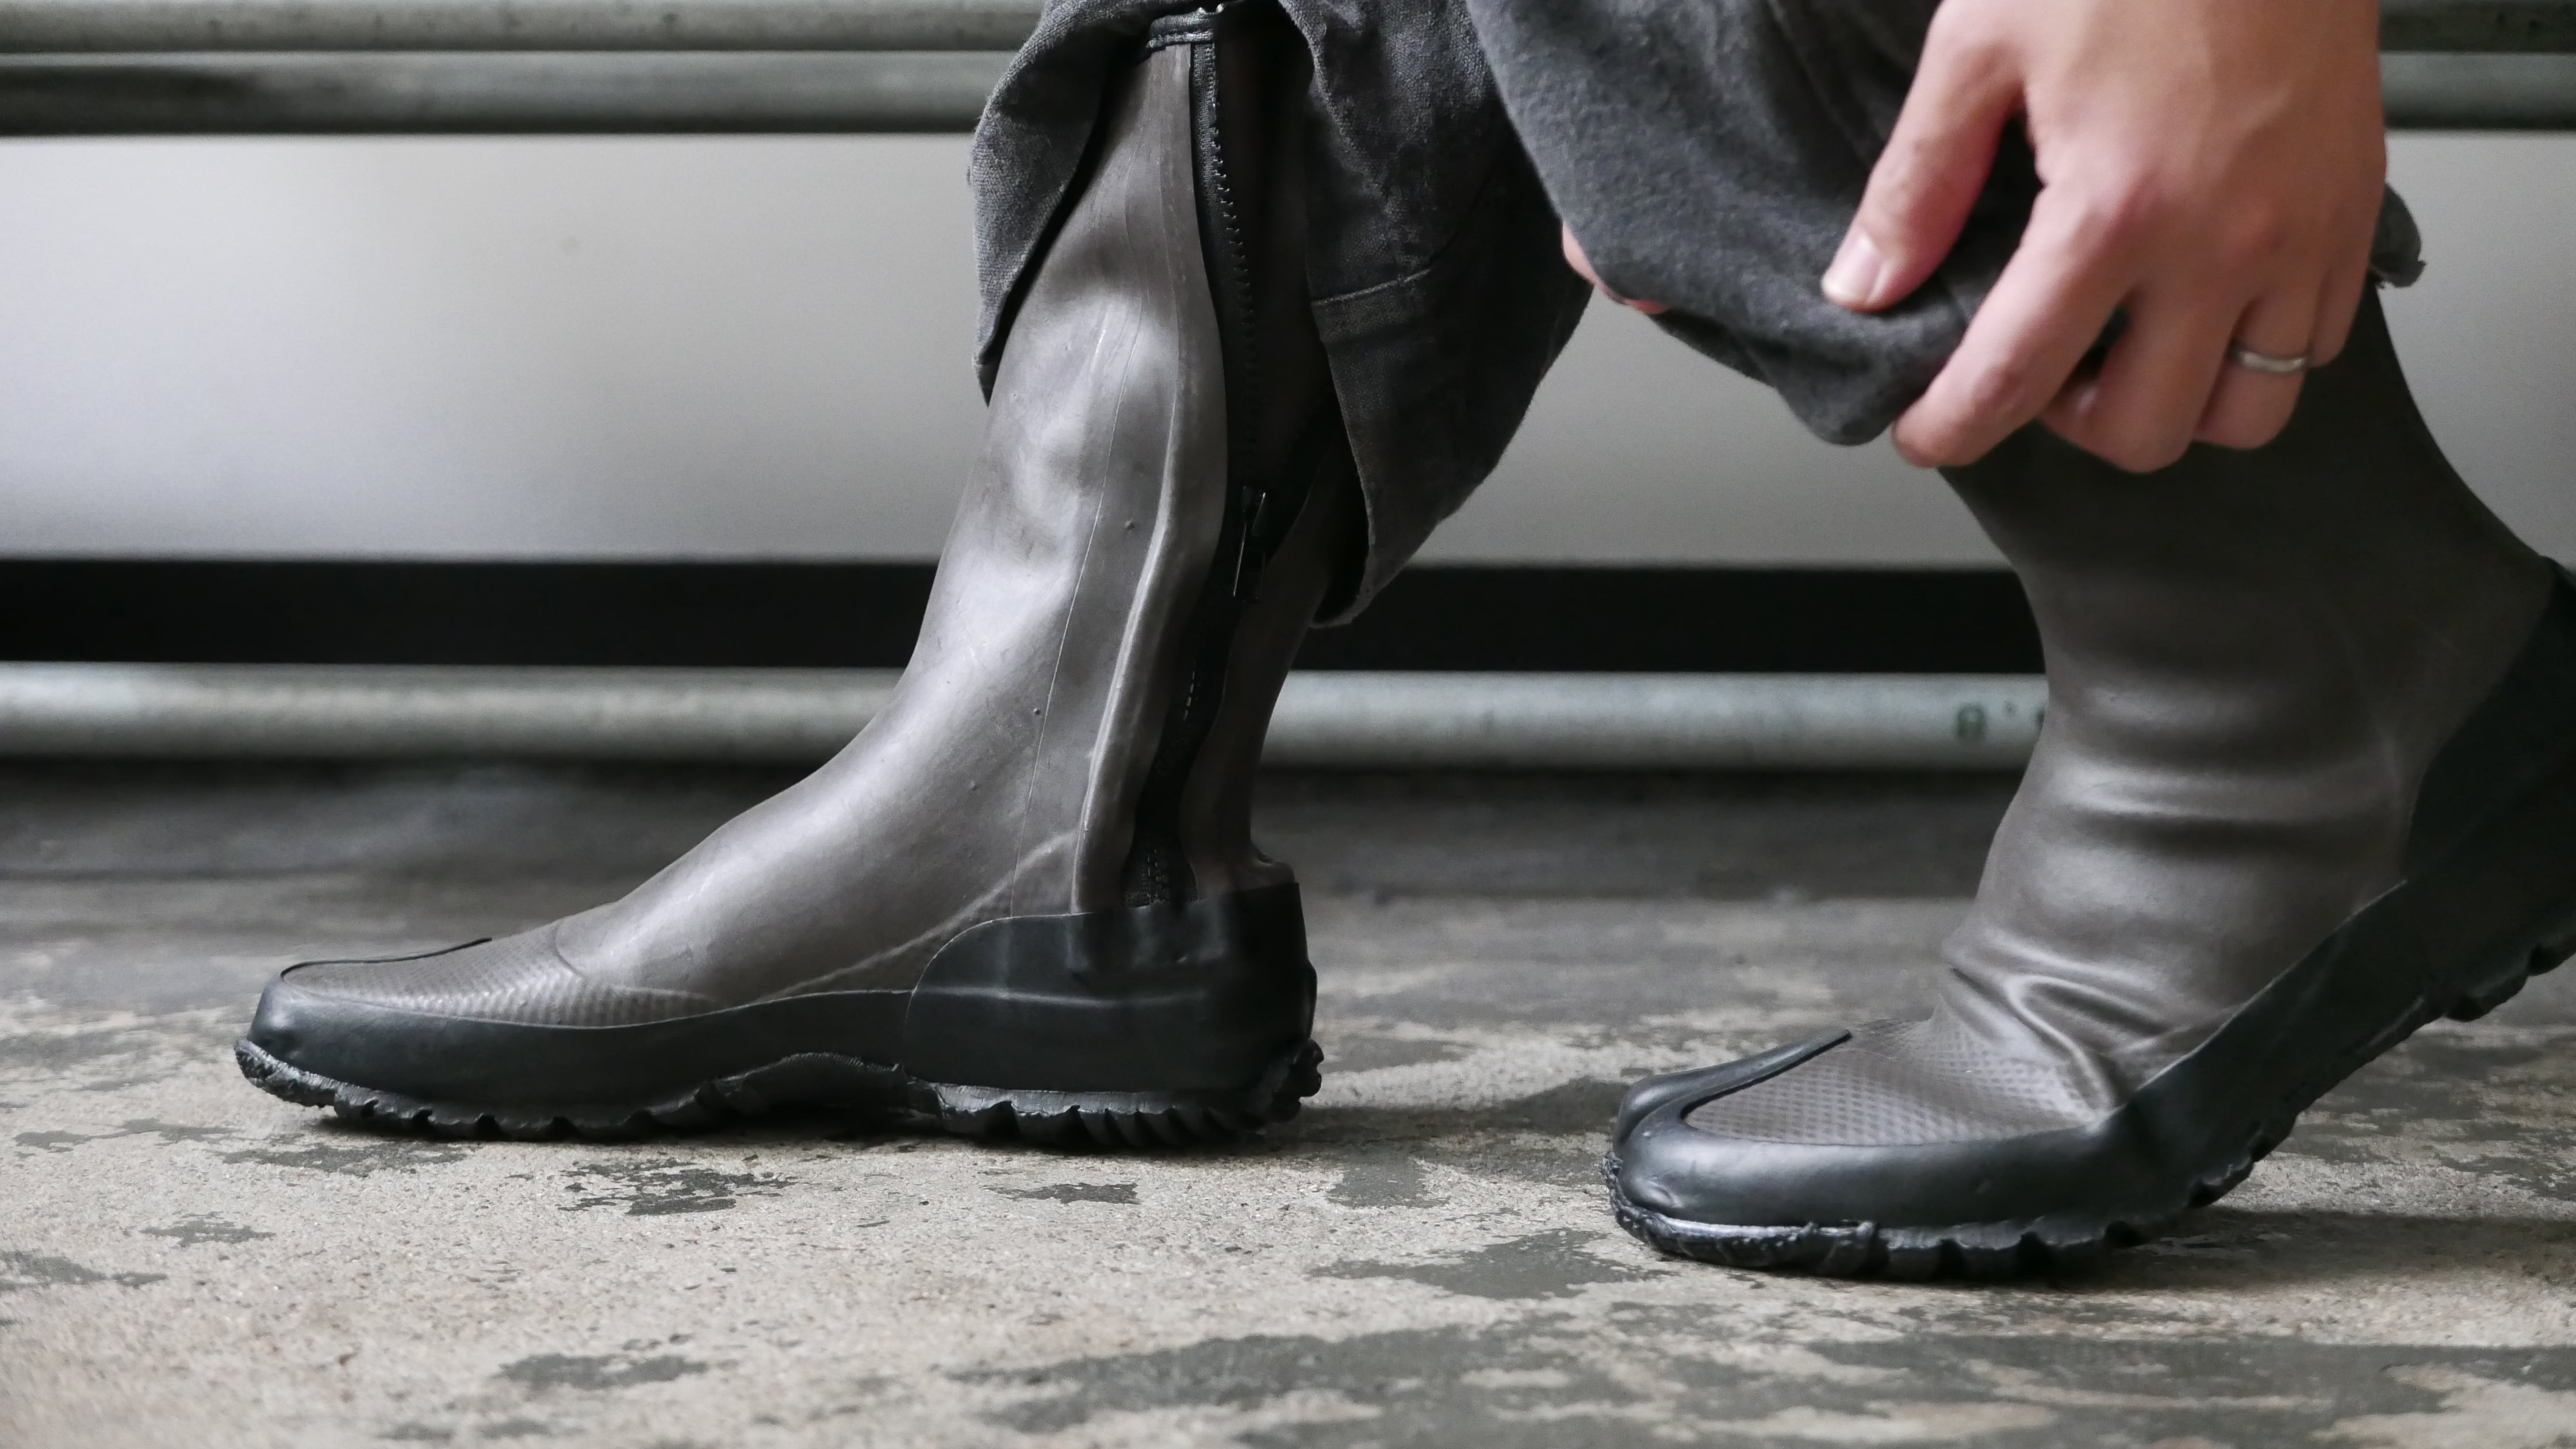 ヴァルカナイズ製法 日本製 " tabi rubber boots" (タビラバーブーツ) 完全防水のレインブーツ / 足袋 長靴